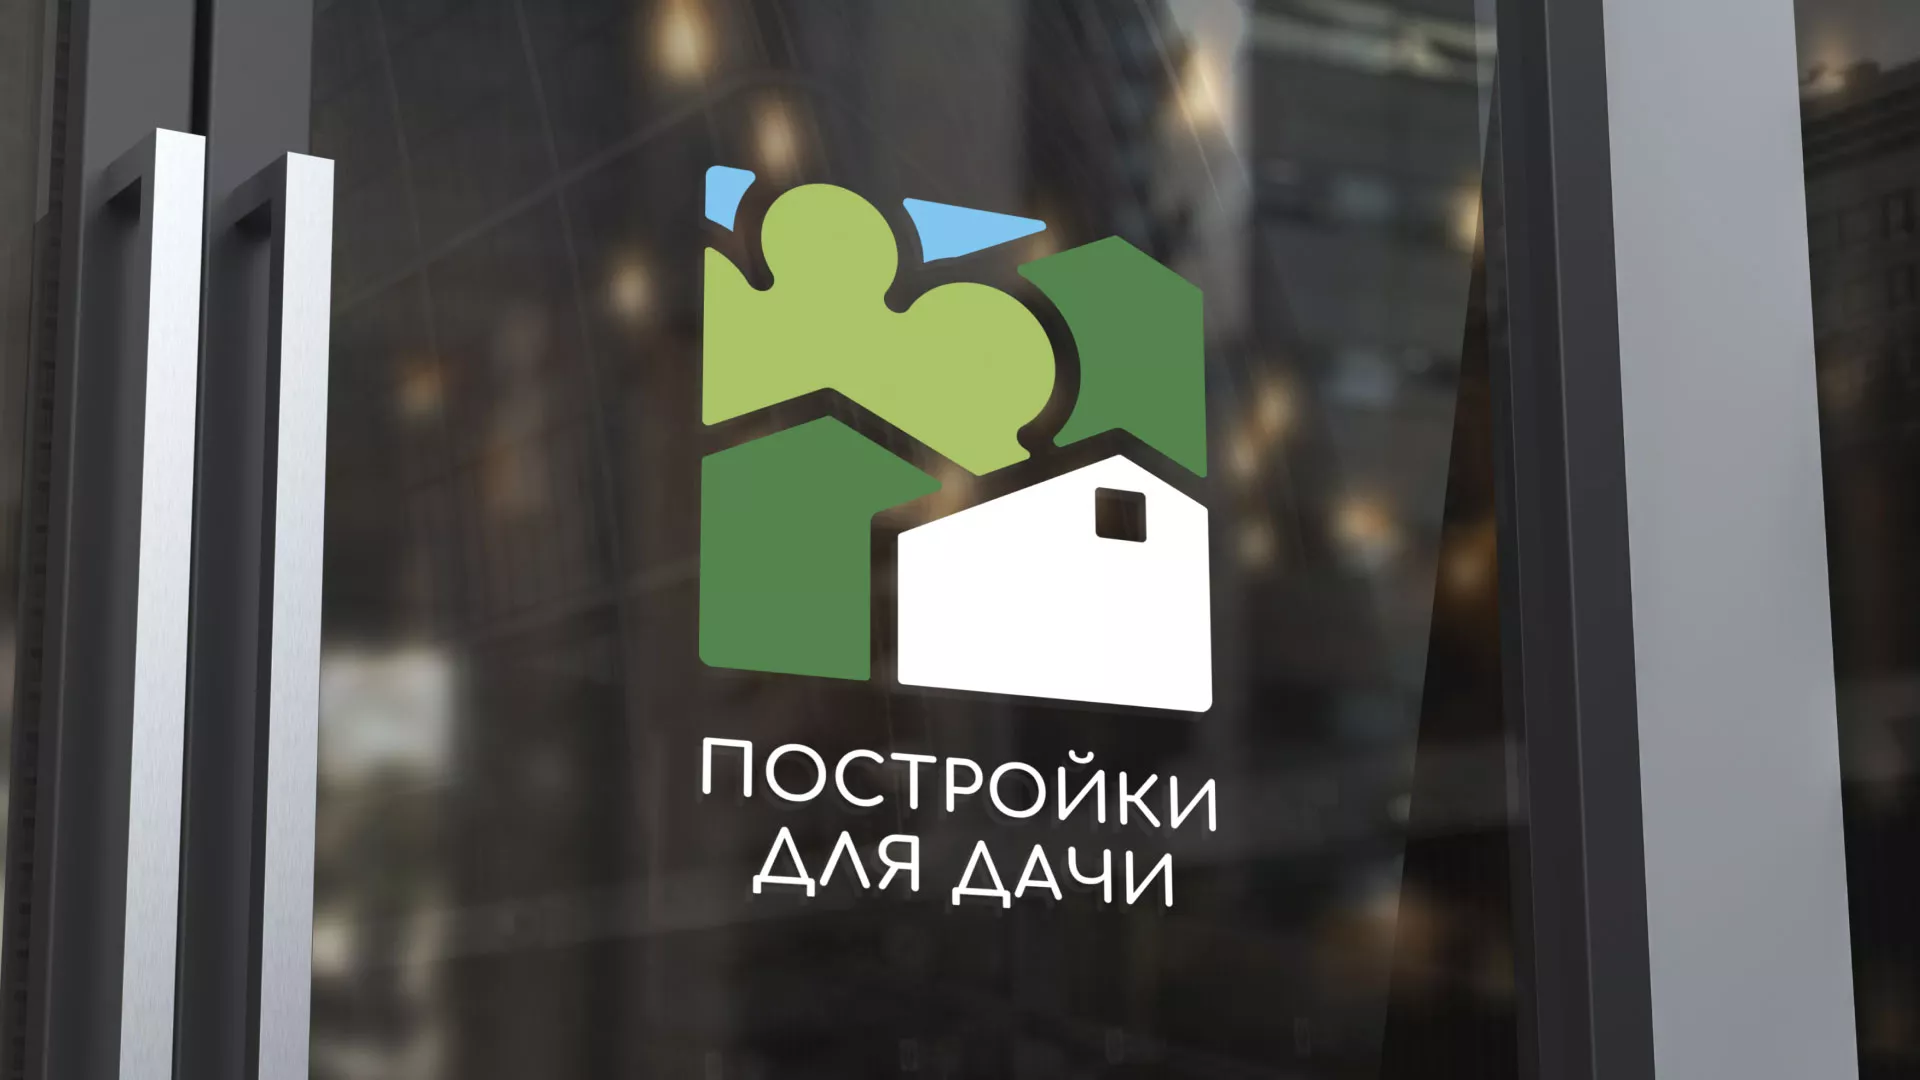 Разработка логотипа в Усть-Куте для компании «Постройки для дачи»